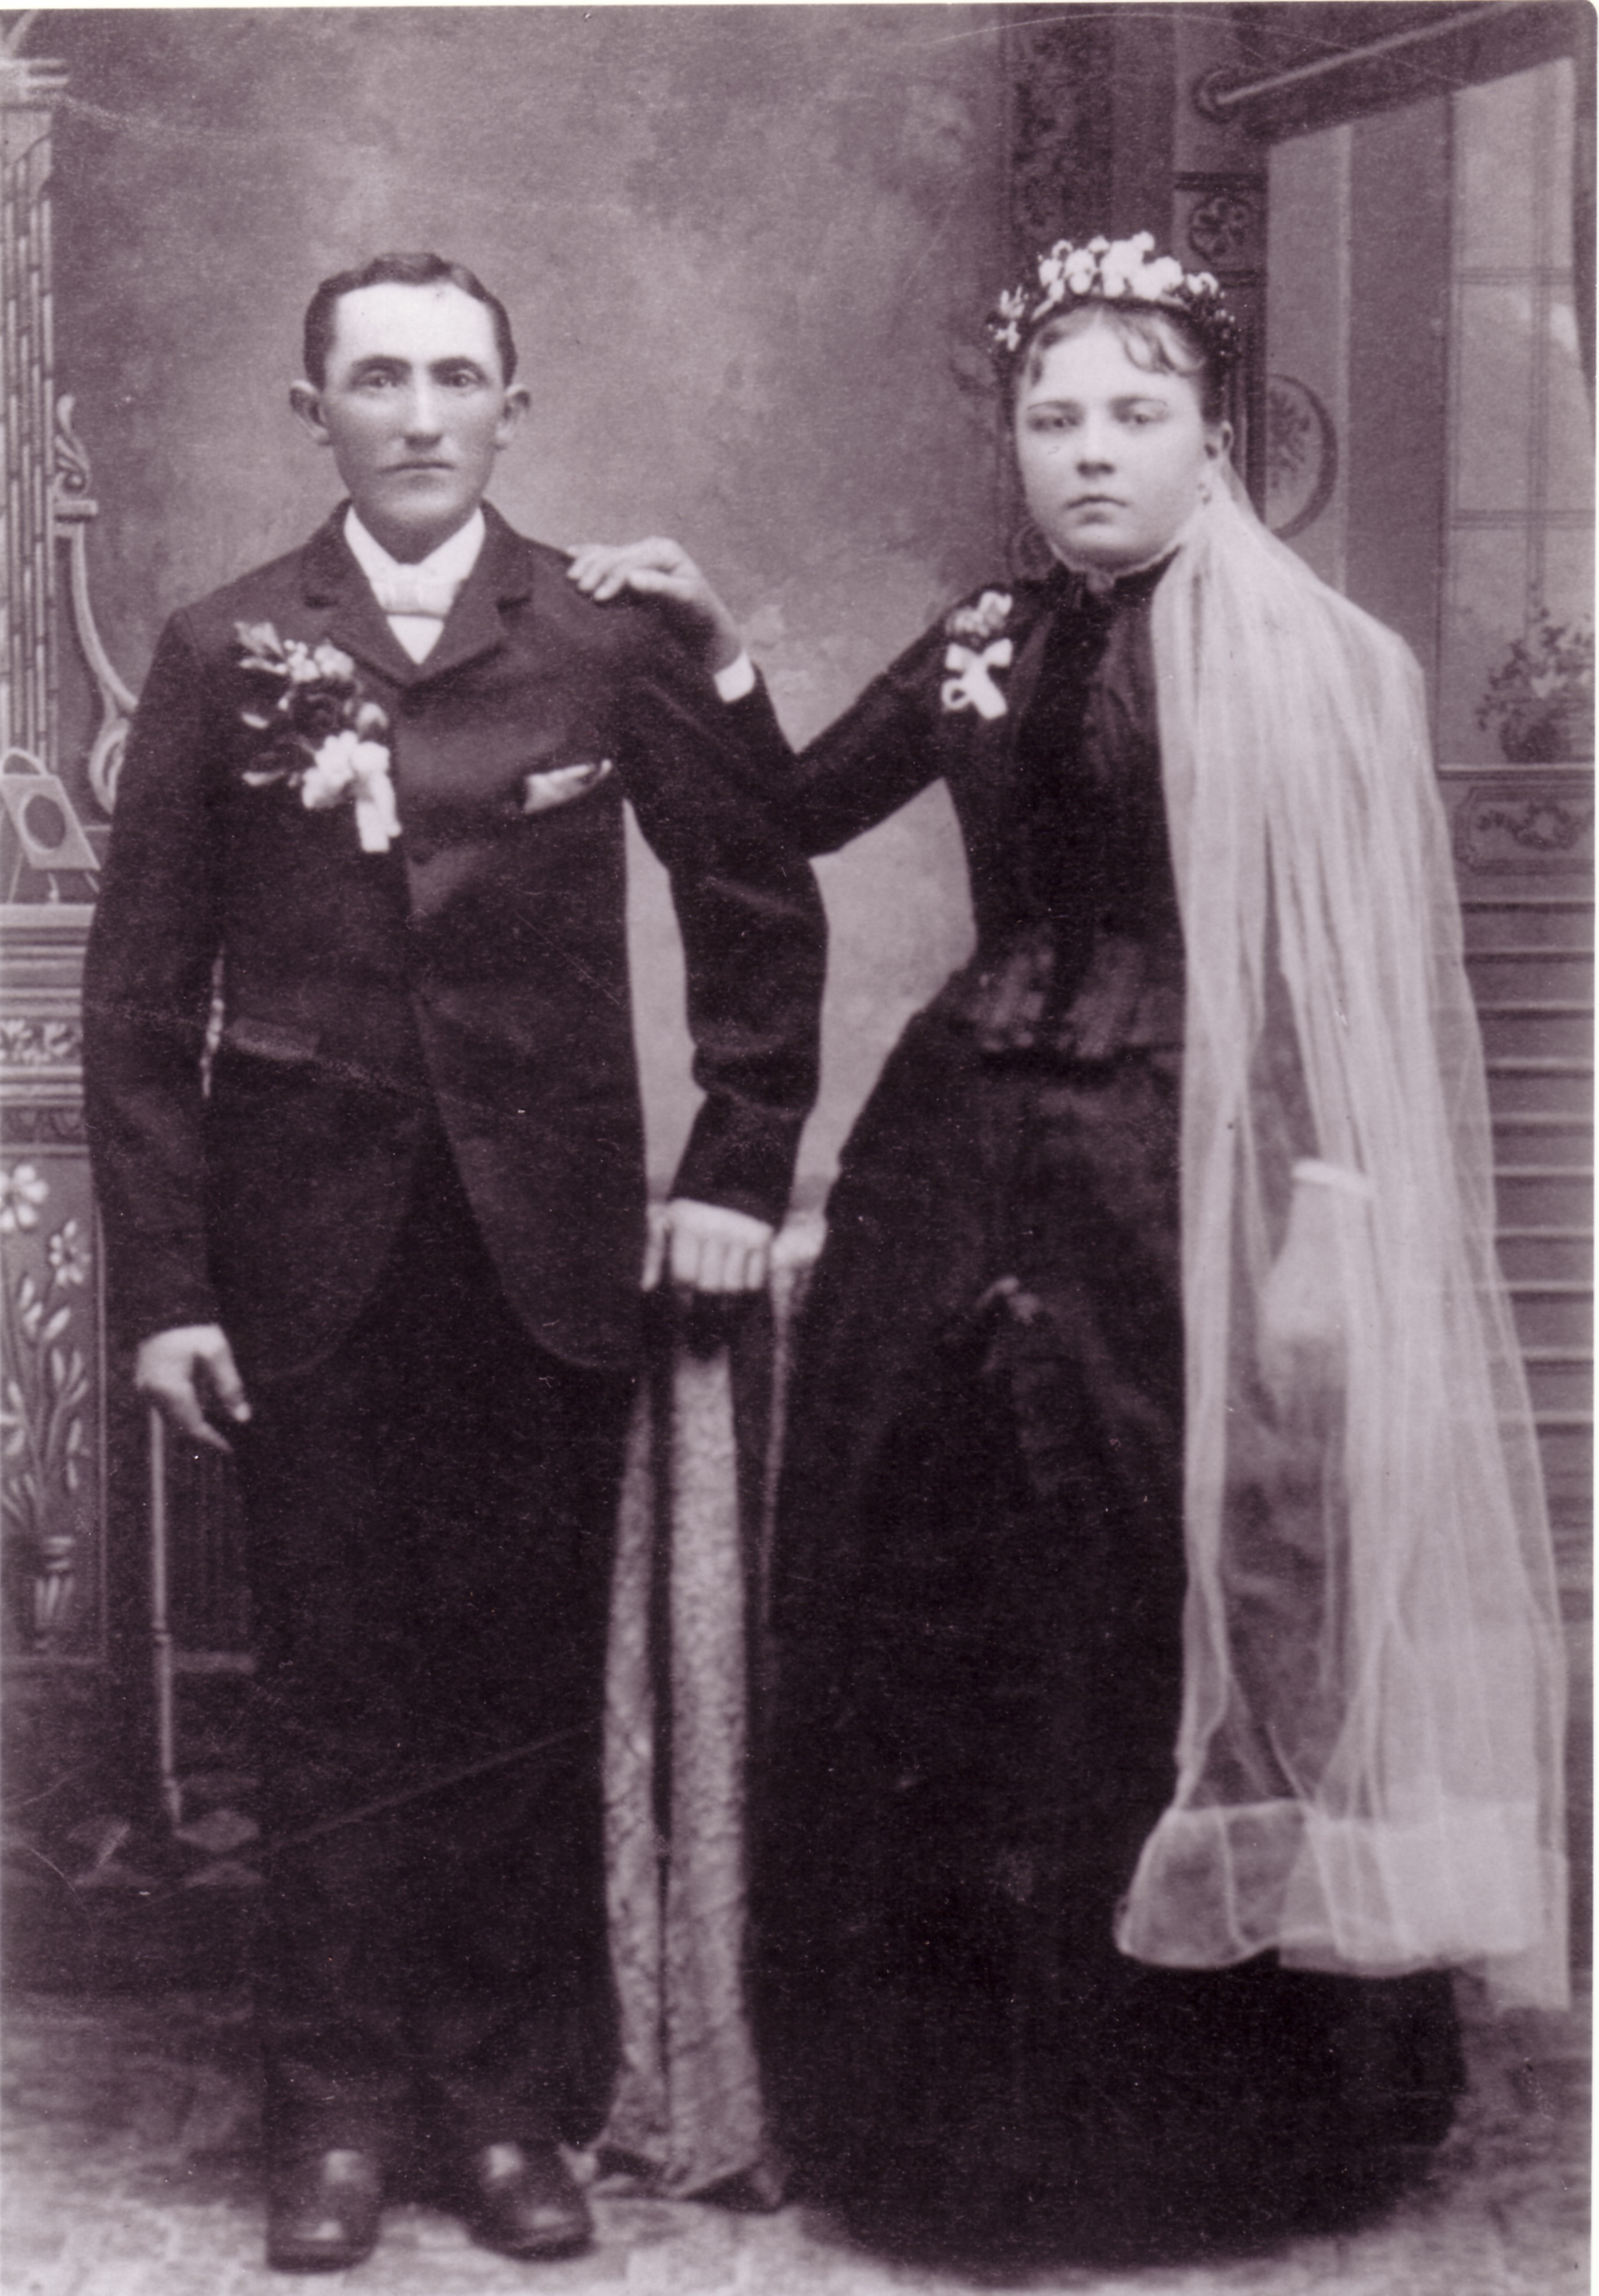 Freidrich Heinrich Eduard Beerman and Margaretha Magdalena Peters Beerman